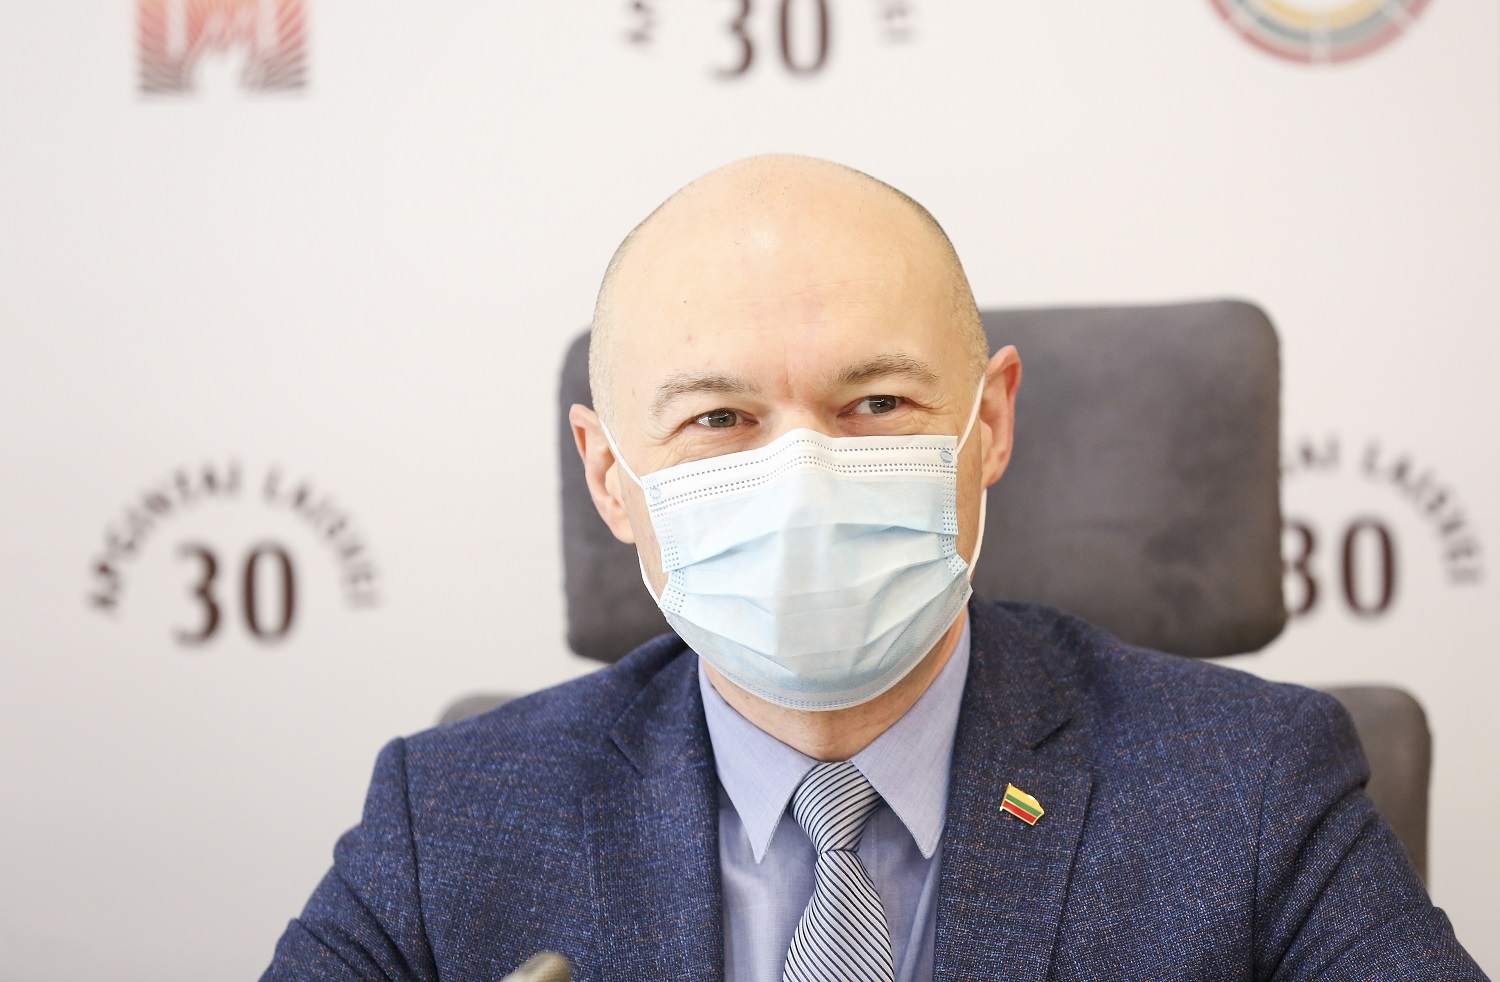 Socialdemokratai siekia pašalinti „pavojingą“ ligoninių reformą iš Seimo darbų programos